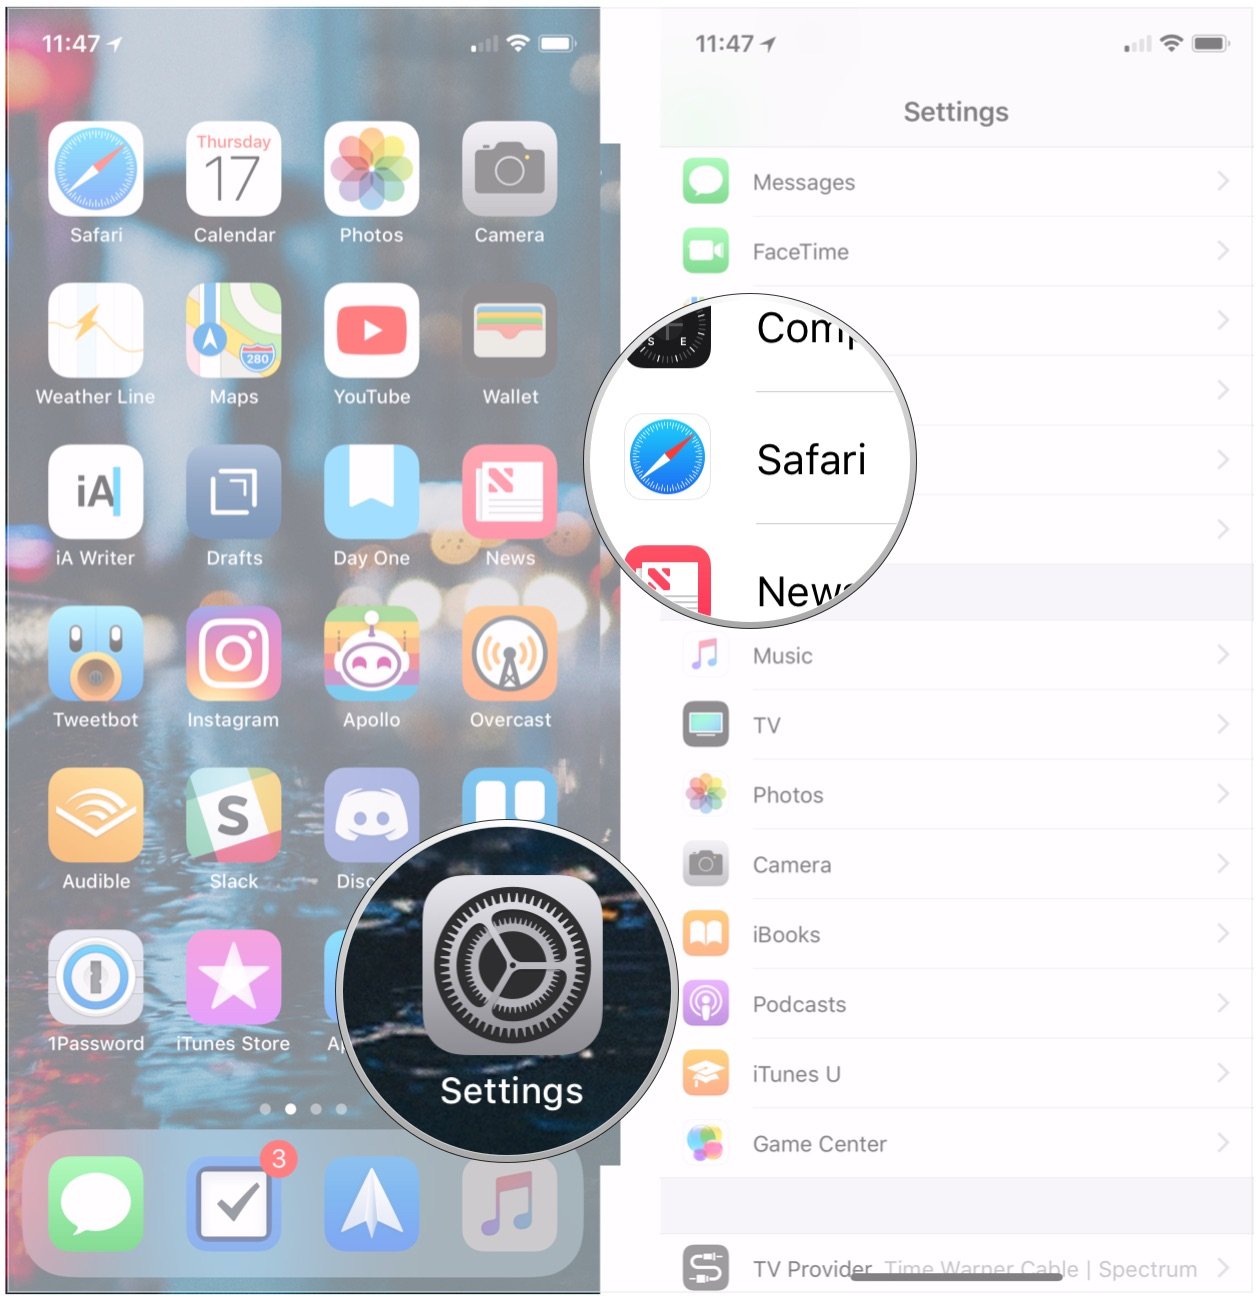 Cambiar el motor de búsqueda en iPhone: Abra Configuración y toque Safari